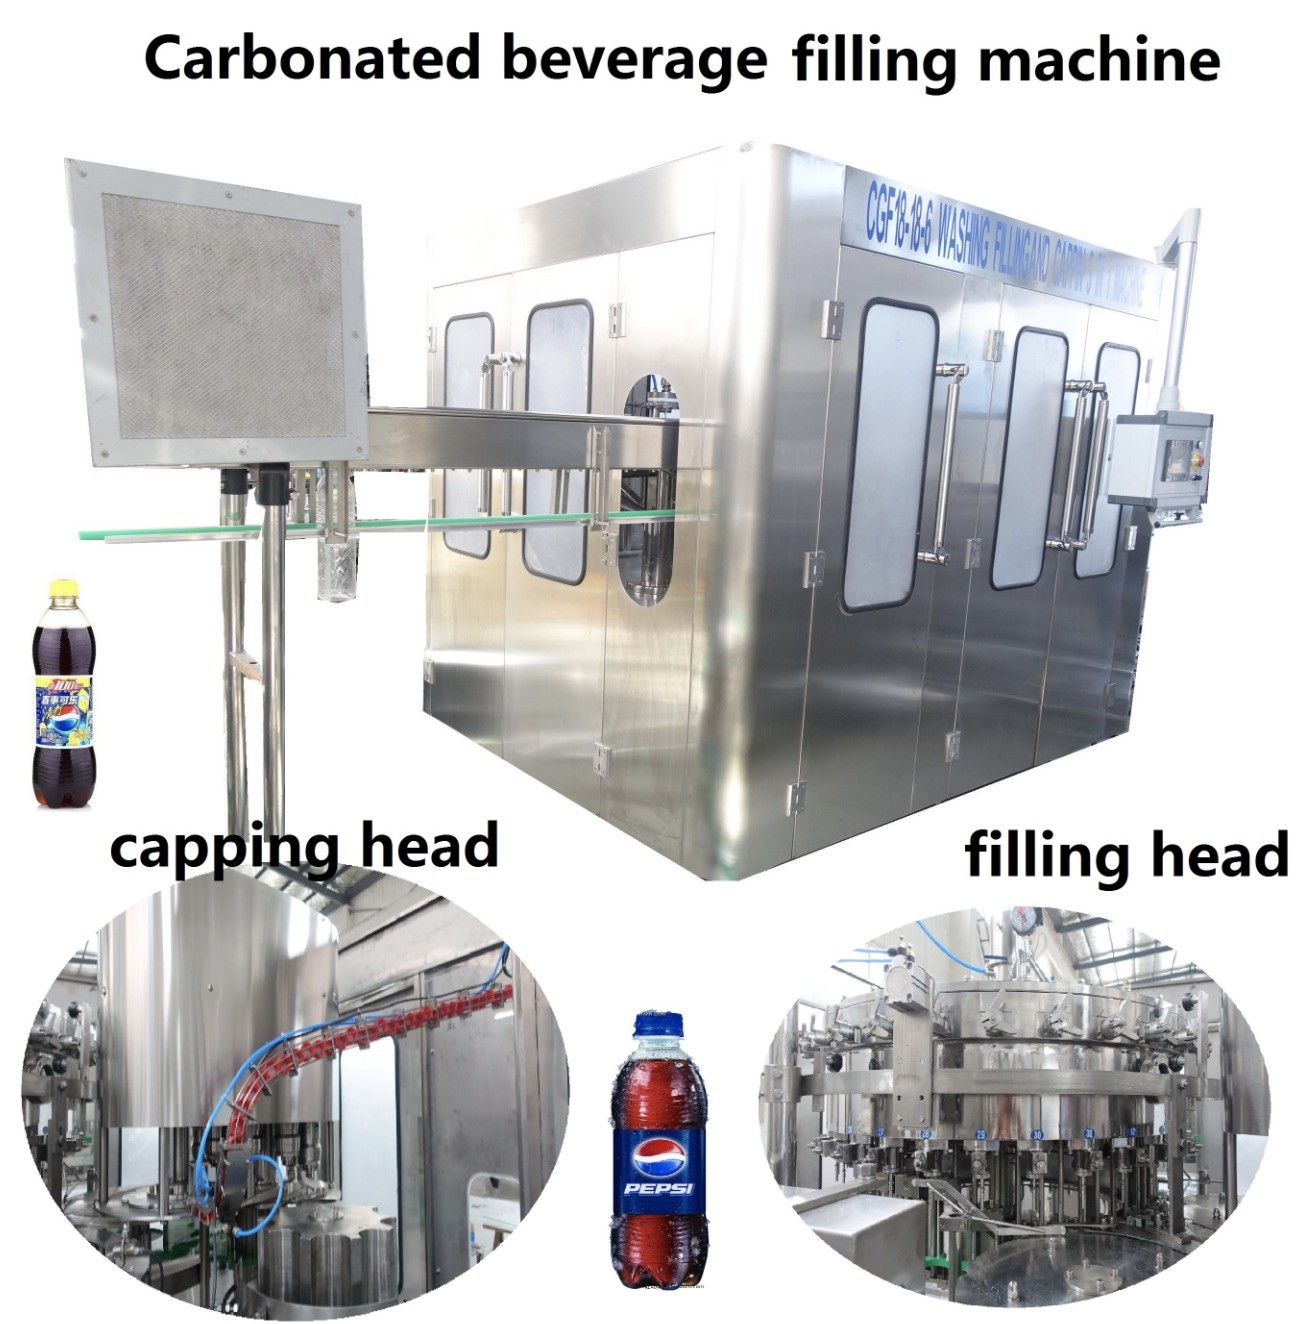 bottle filling machine - carbonation and bottle filling 